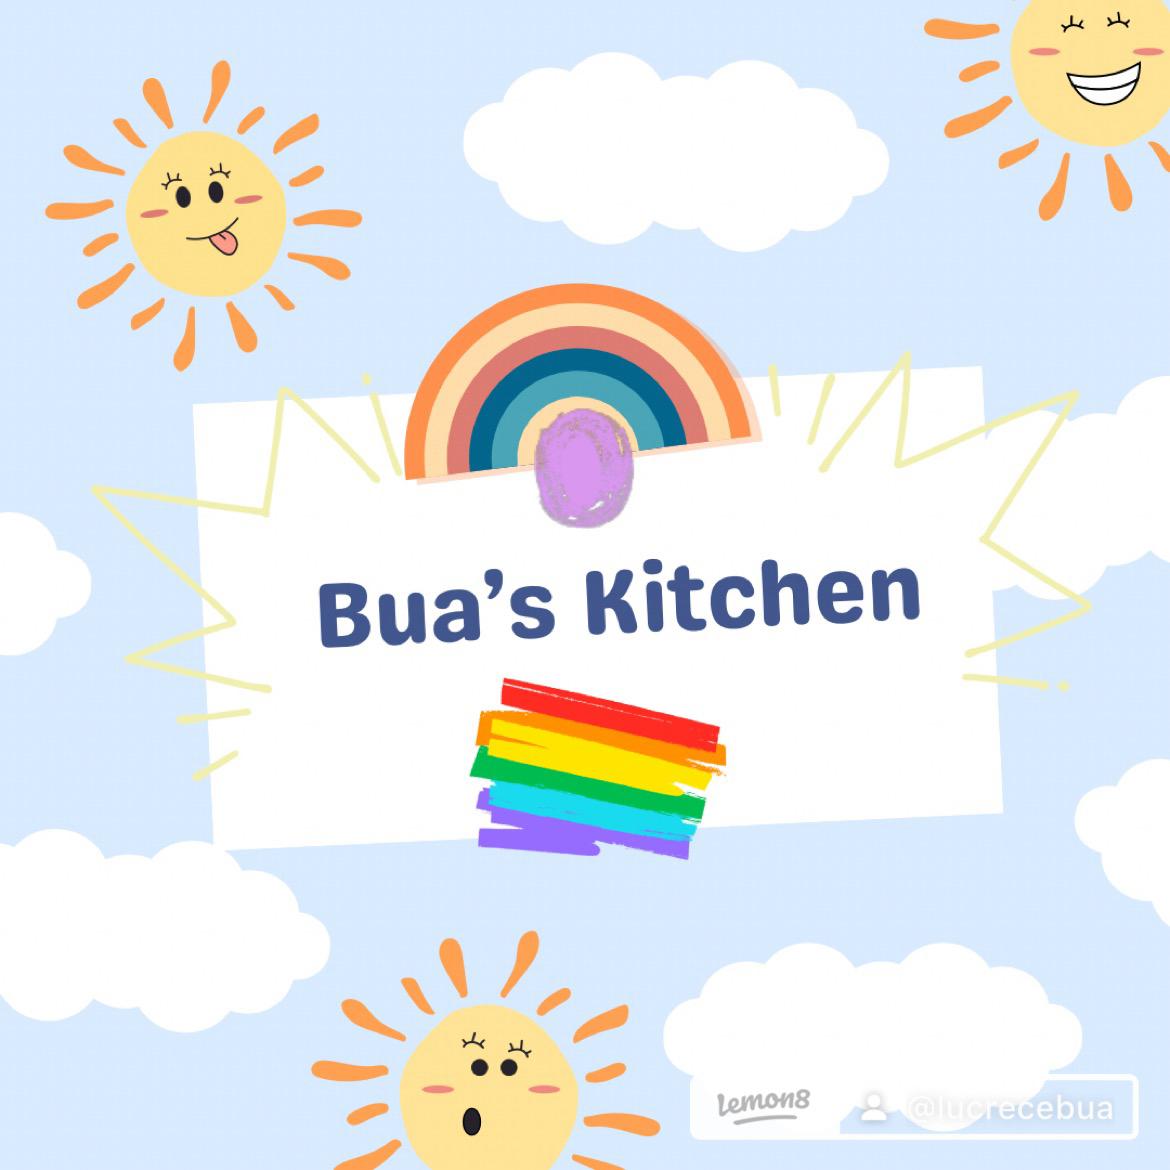 Bua's Kitchen